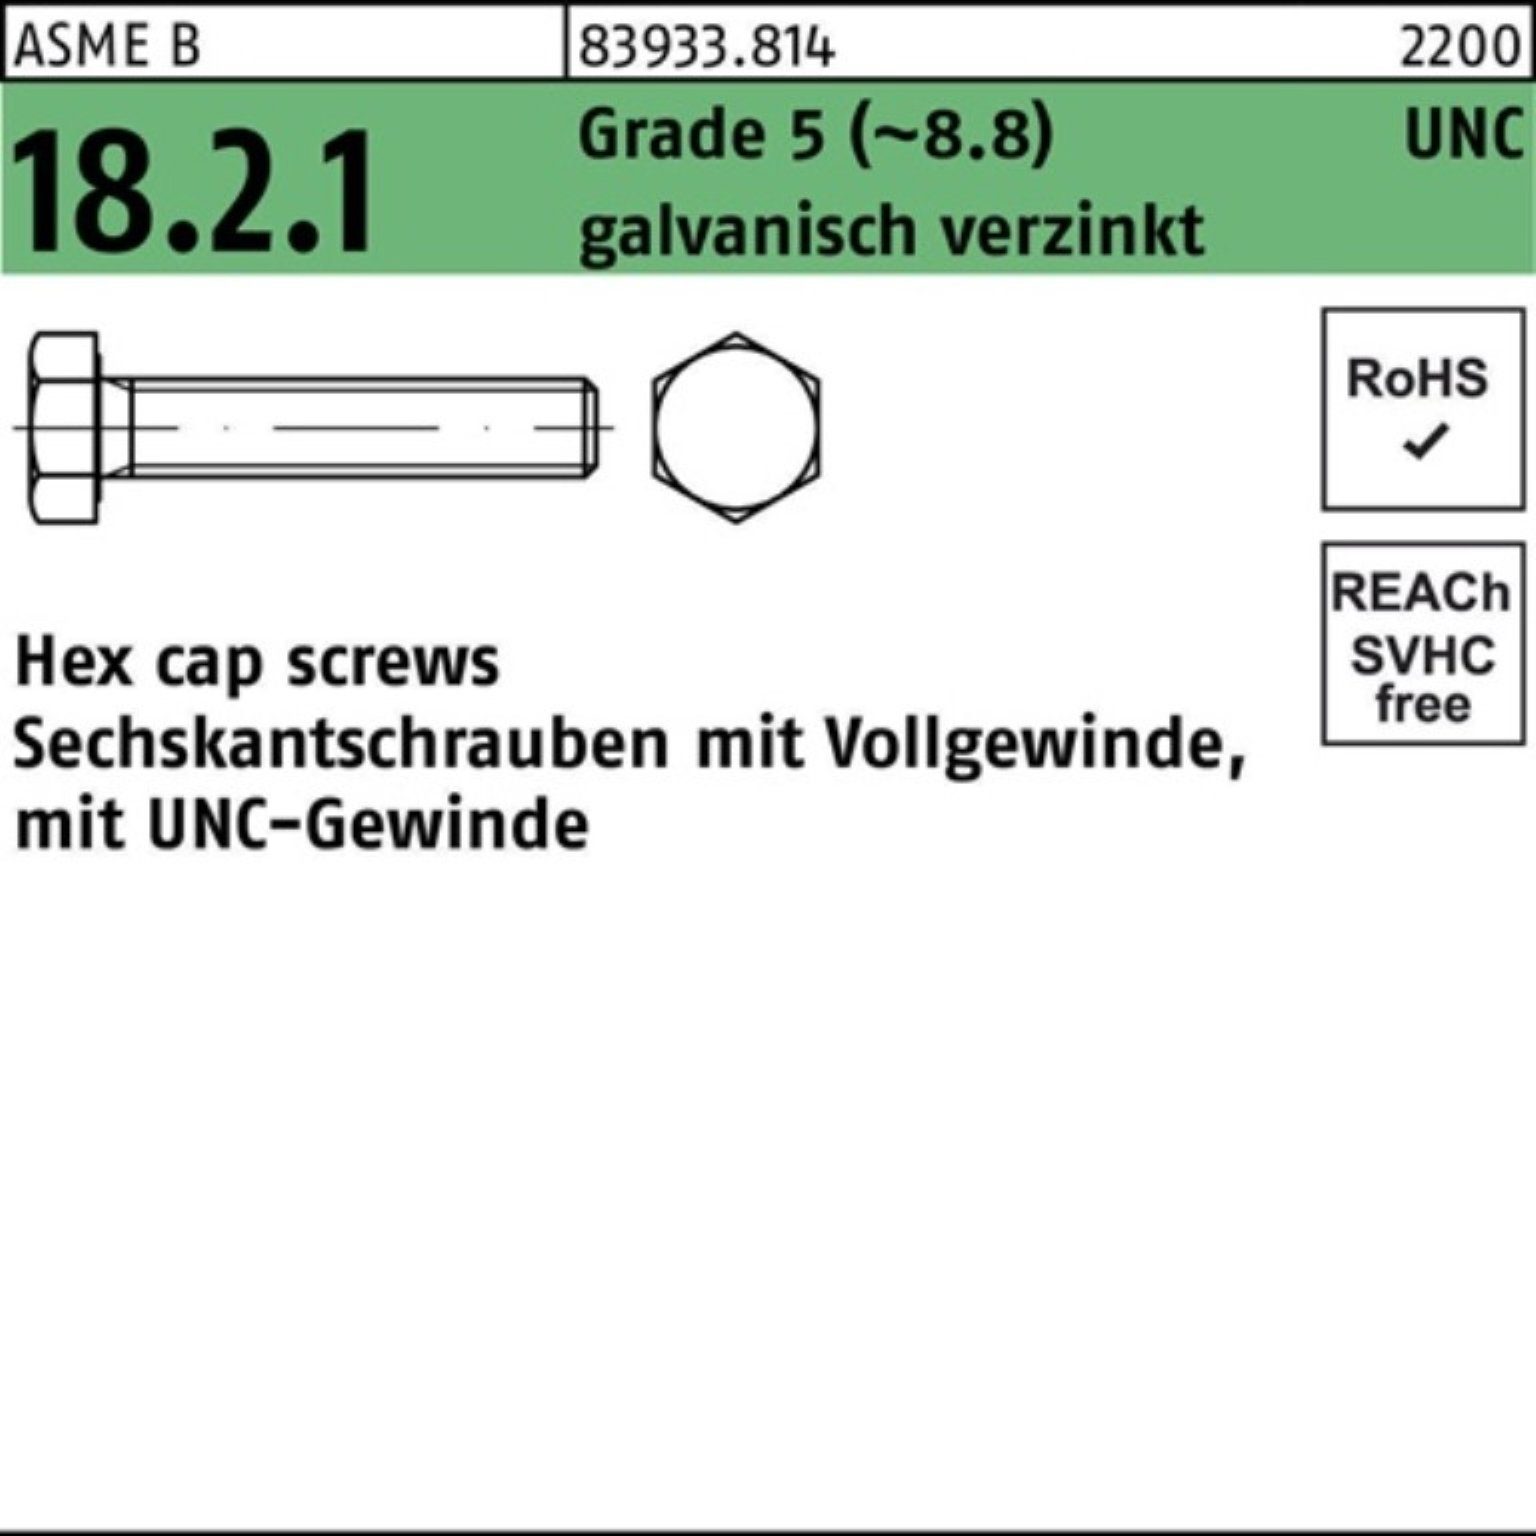 Reyher Sechskantschraube 100er Pack Sechskantschraube R 83933 UNC VG 3/8x1/2 Grade 5 (8.8) gal